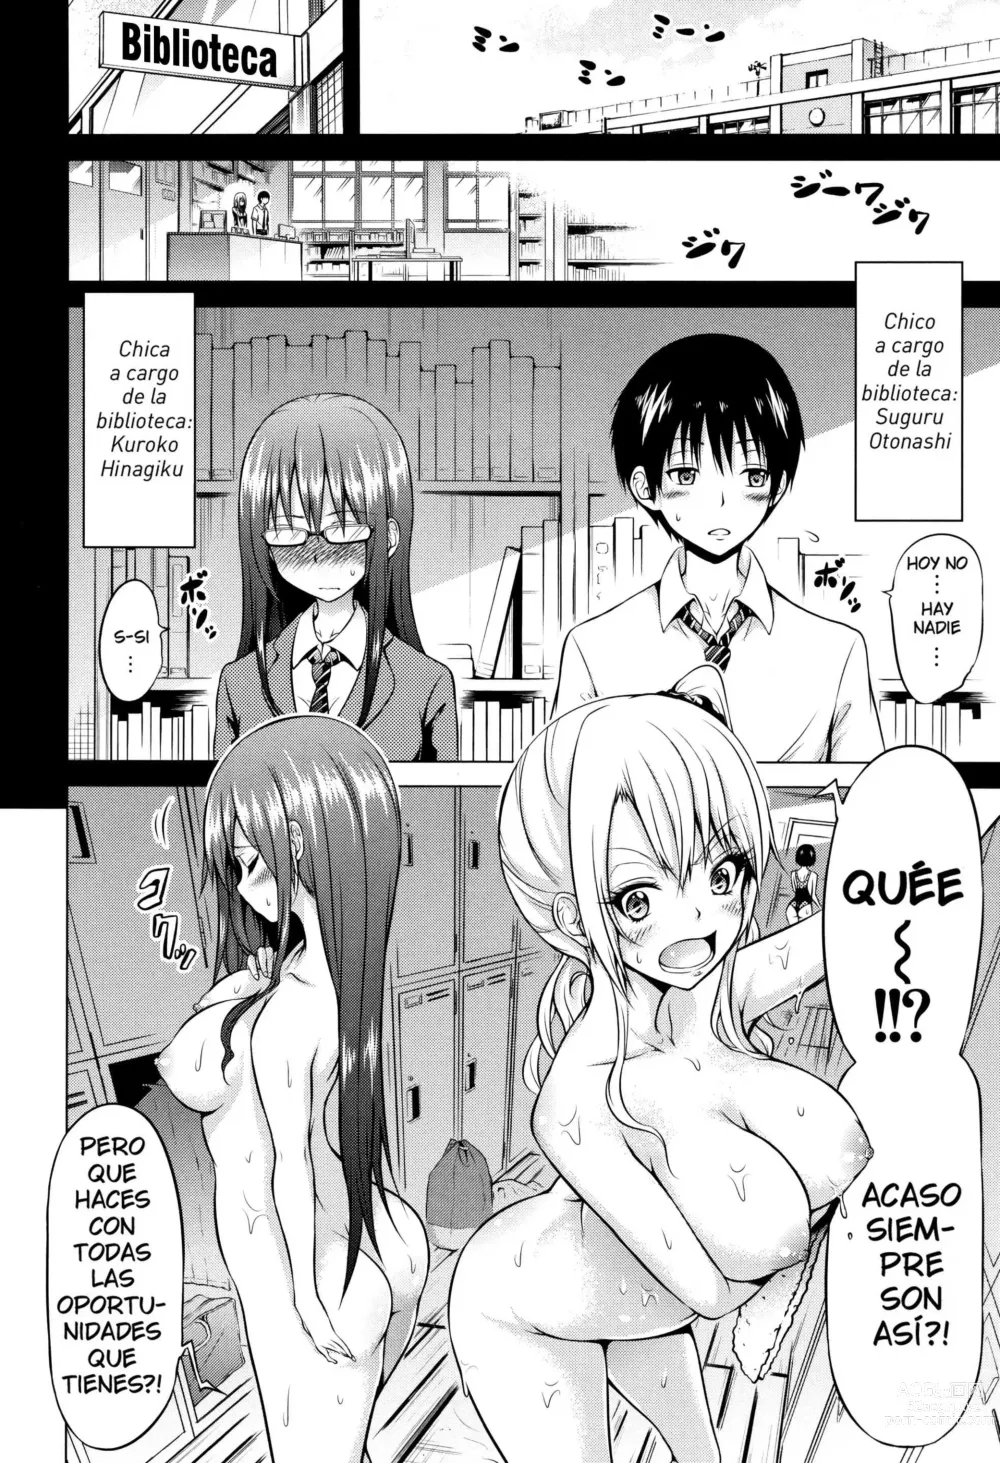 Page 2 of manga Bienvenidos al club de Hinagiku para perder la virginidad Cap.1 (decensored)